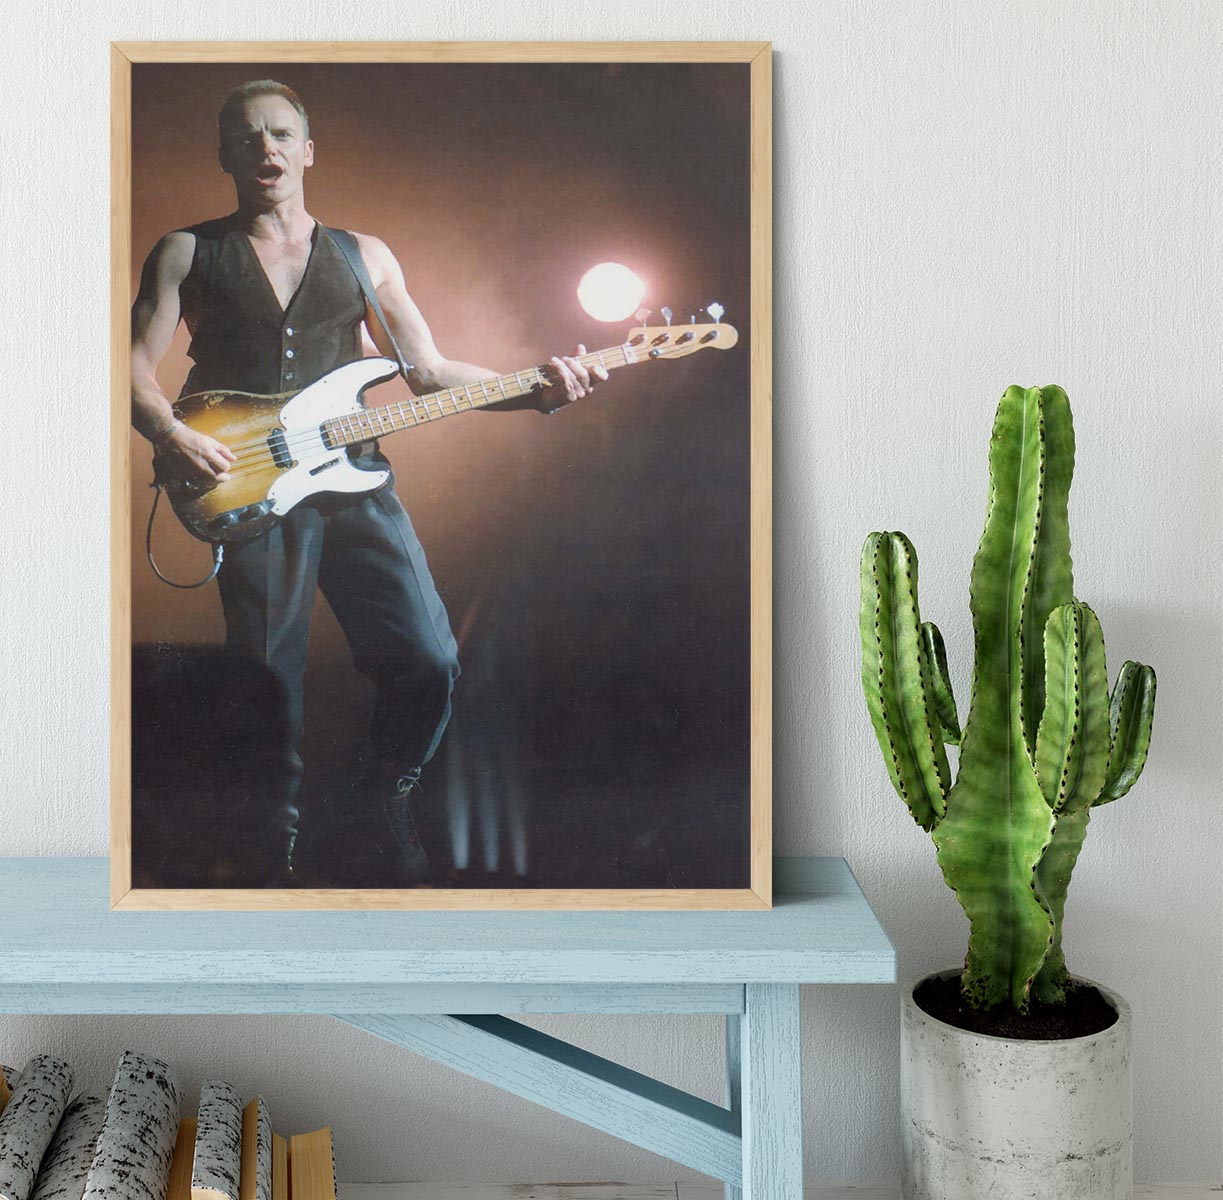 Sting in concert Framed Print - Canvas Art Rocks - 4